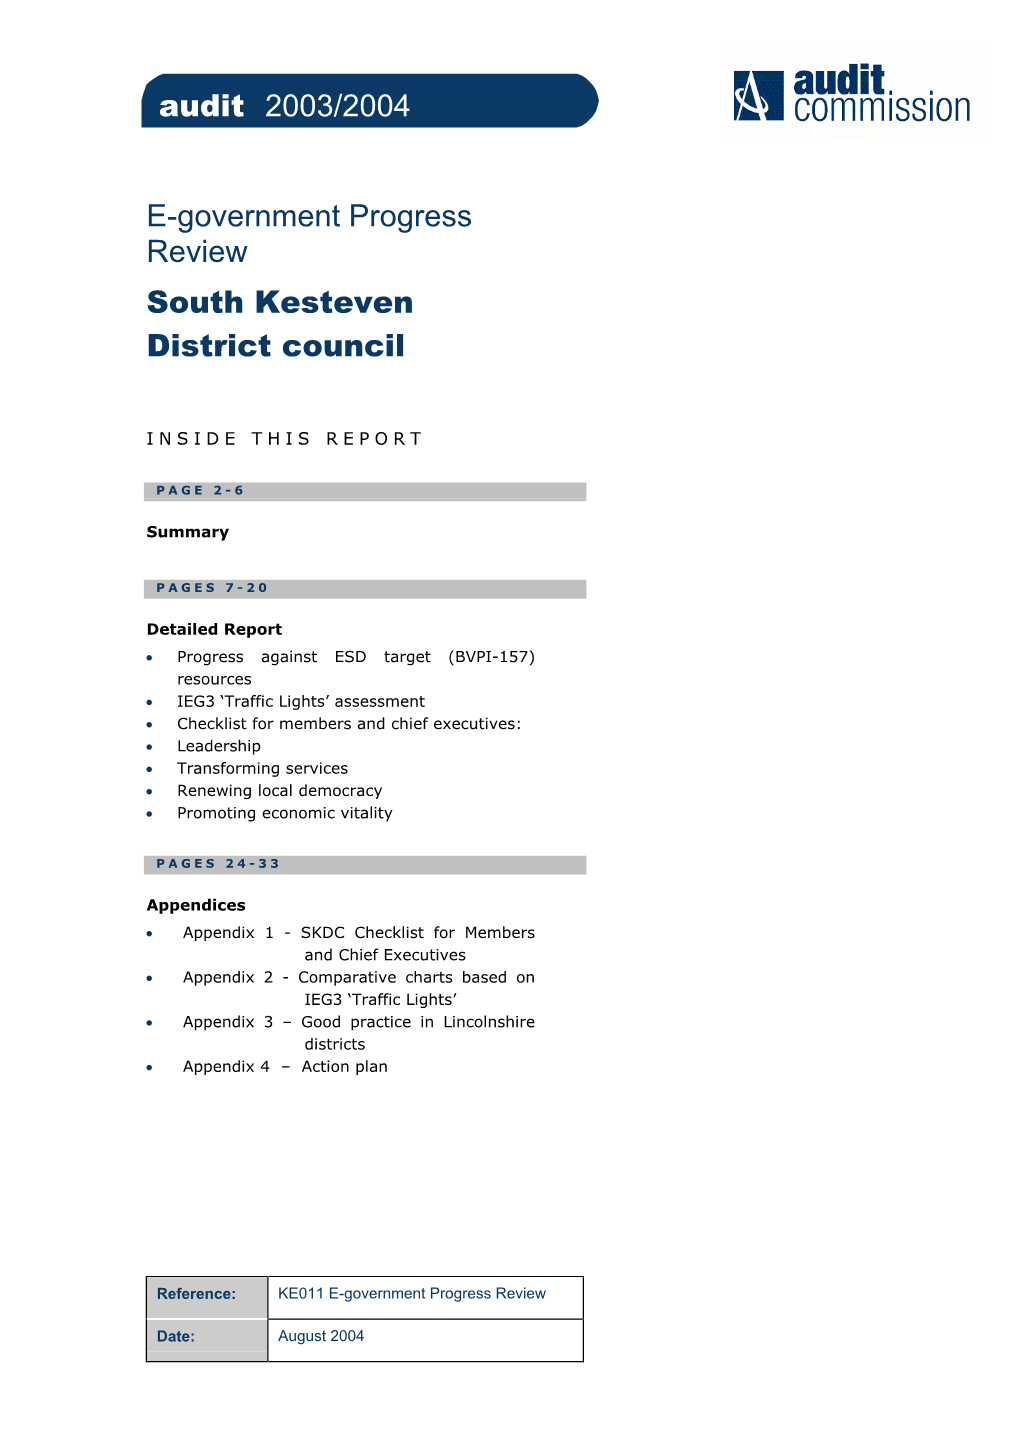 E-Government Progress Review South Kesteven District Council Audit